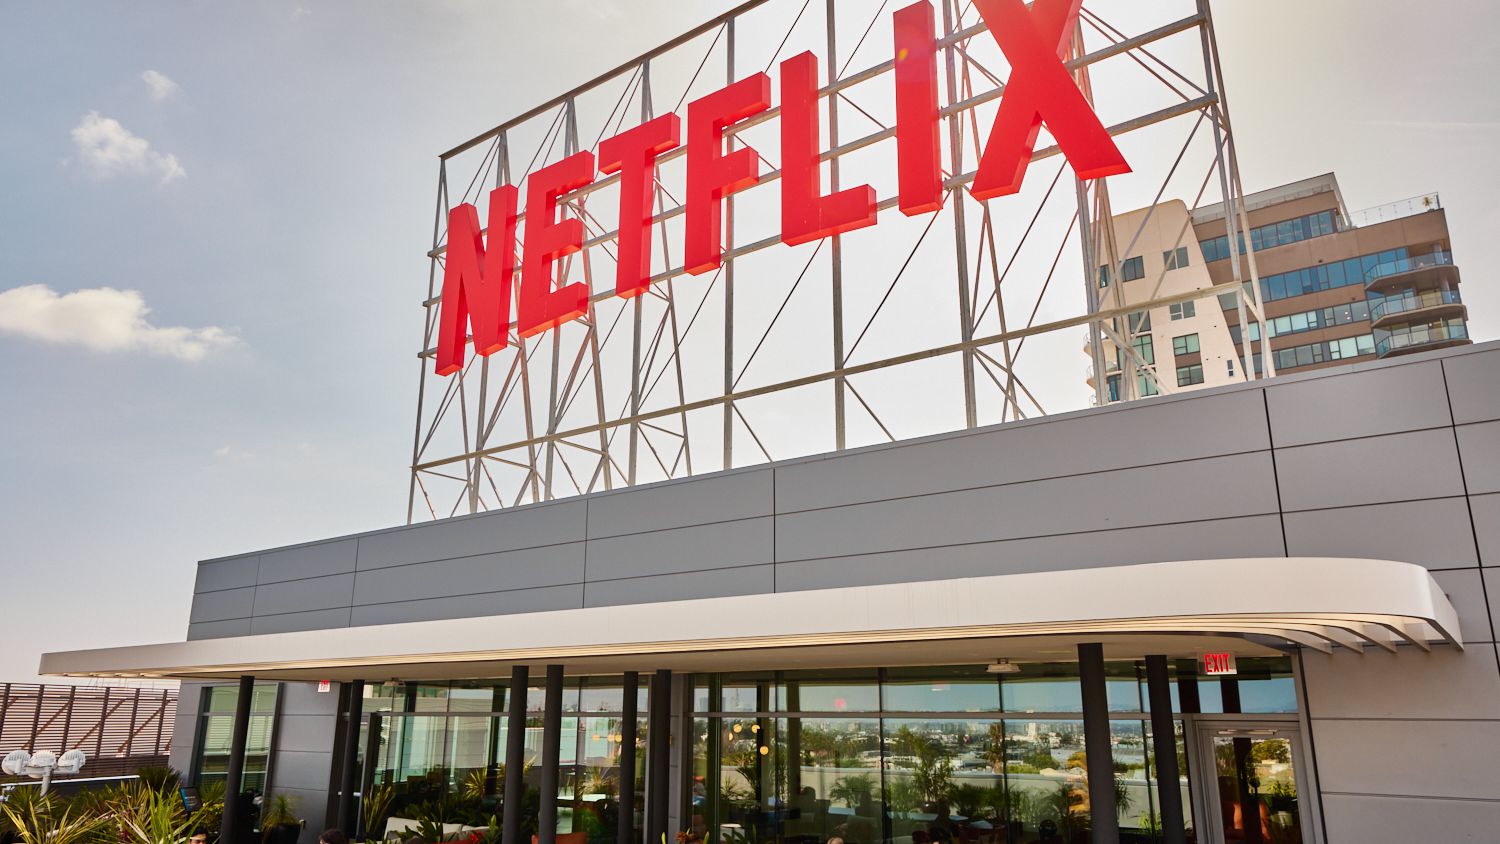 Como assinar e cancelar assinatura da Netflix? Saiba como ativar ou  desativar conta - Pacotes 2021